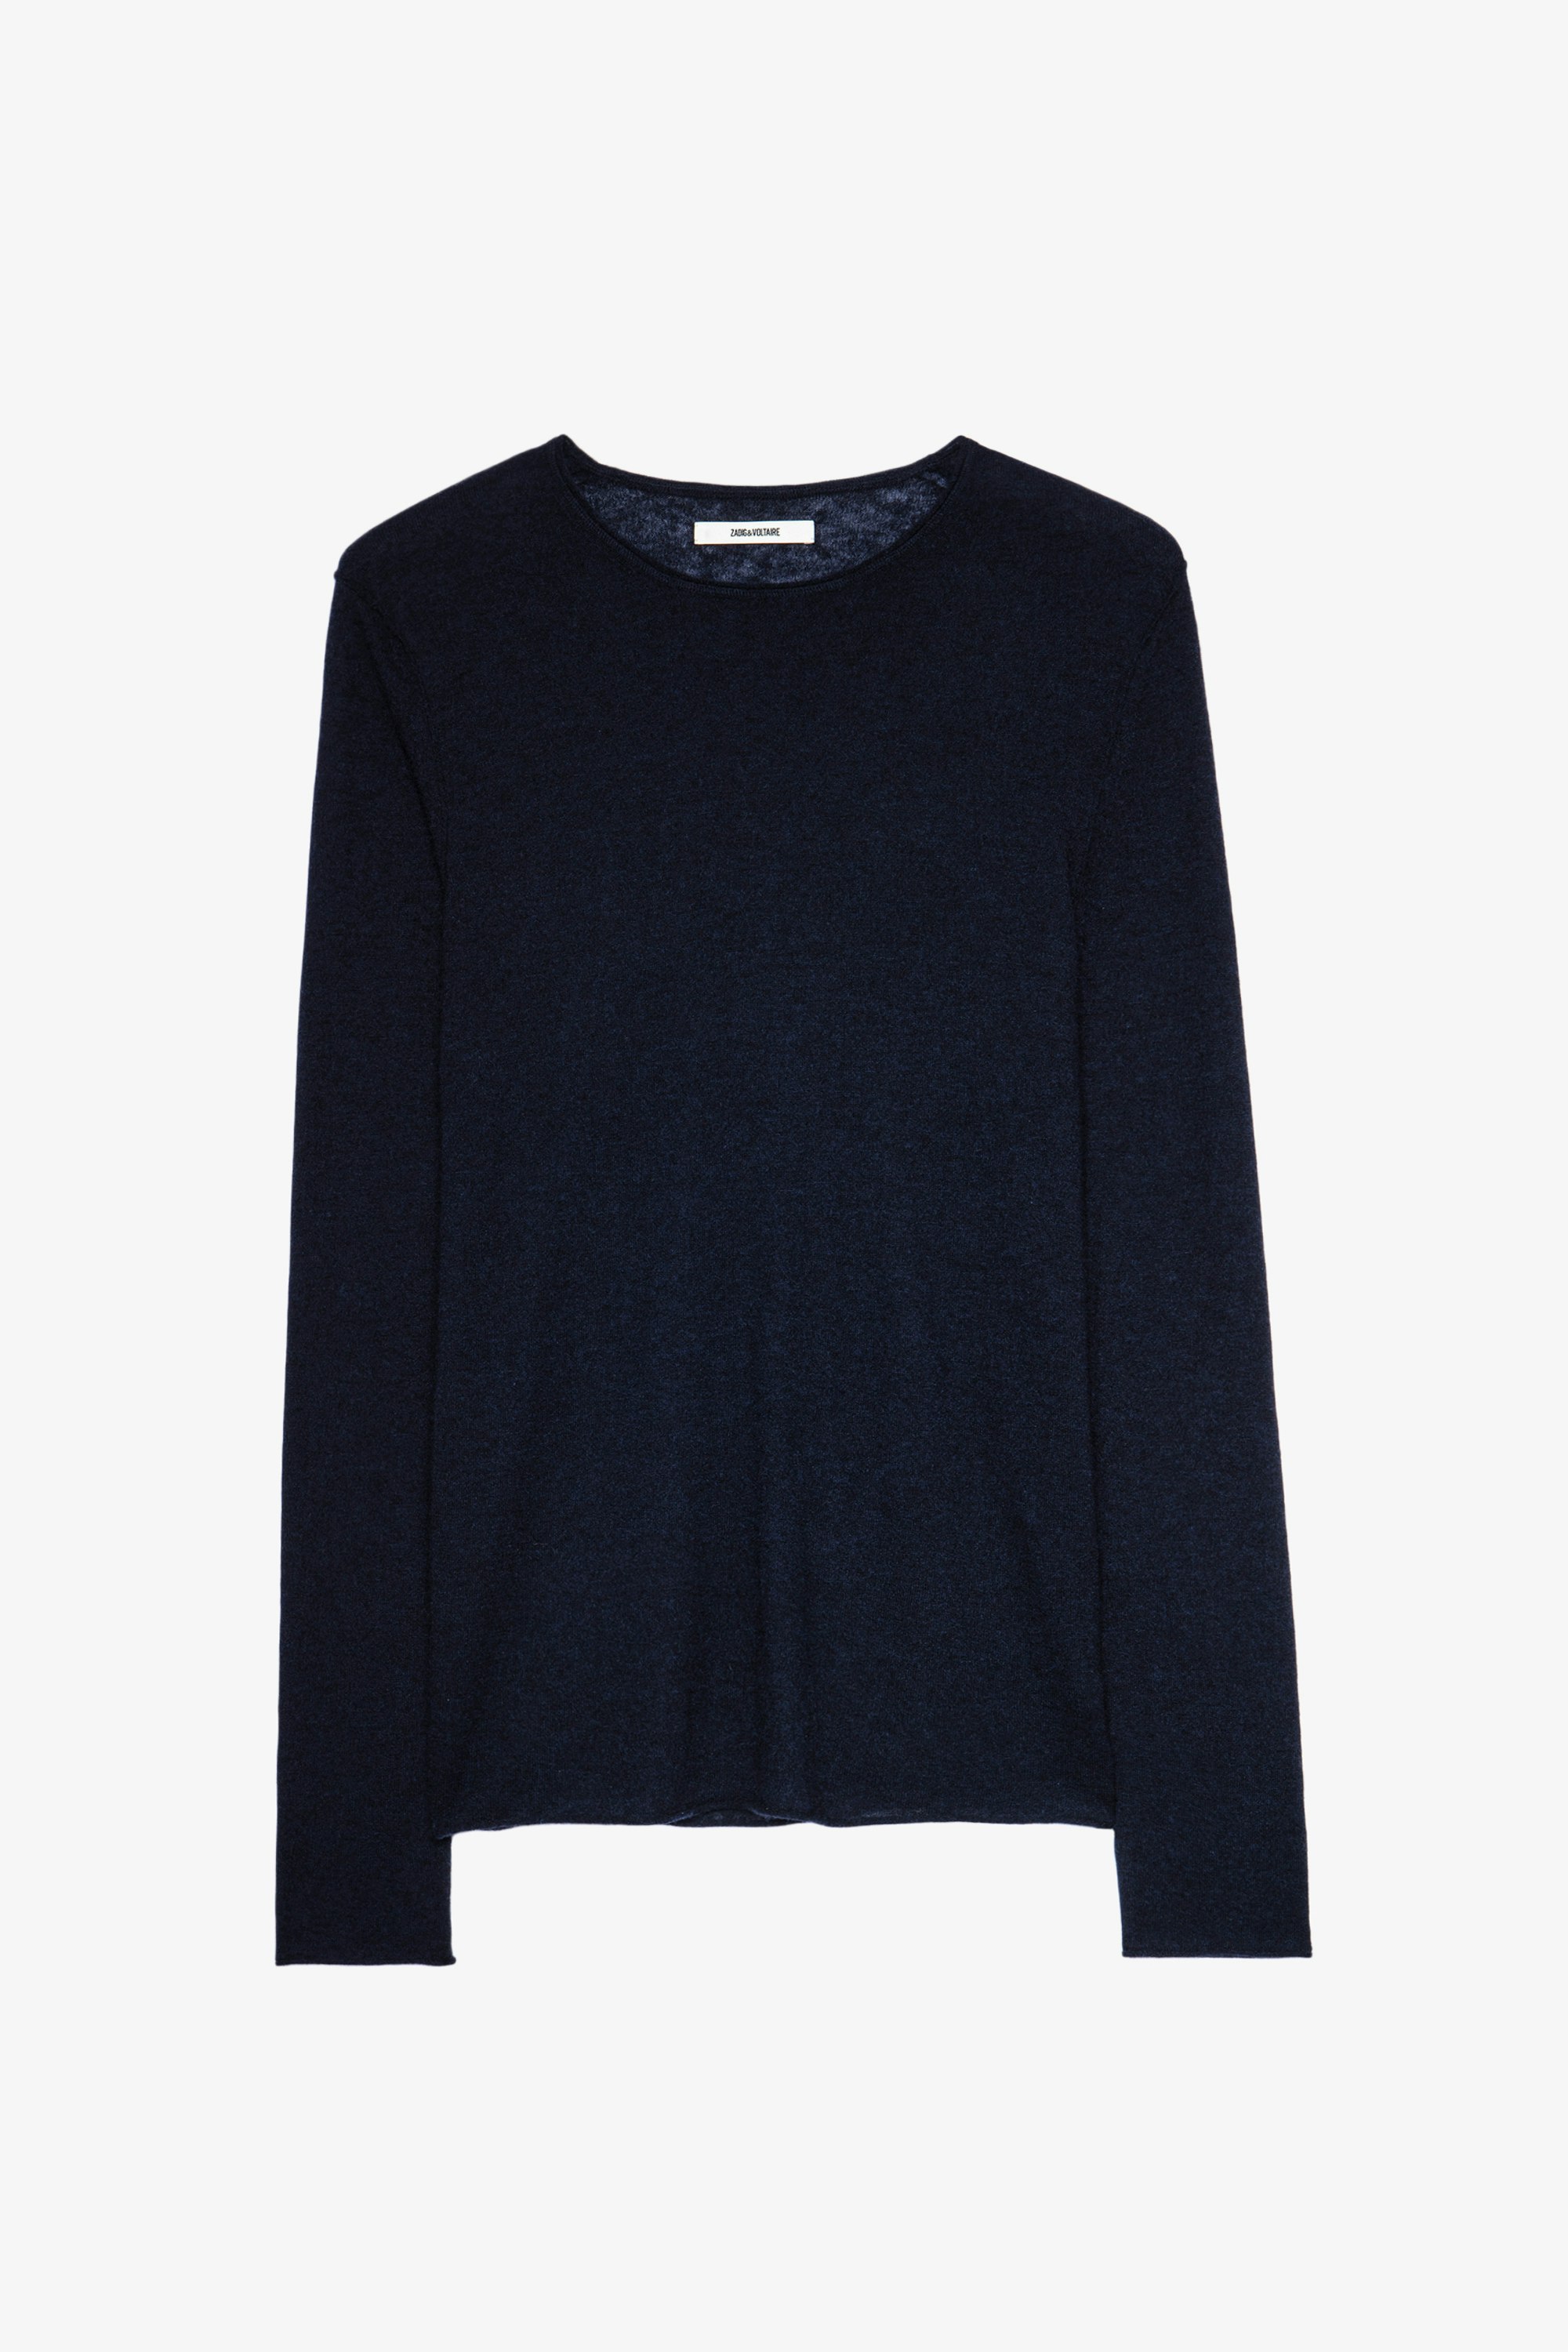 Teiss Cachemire Jumper - Round-neck cashmere sweater.